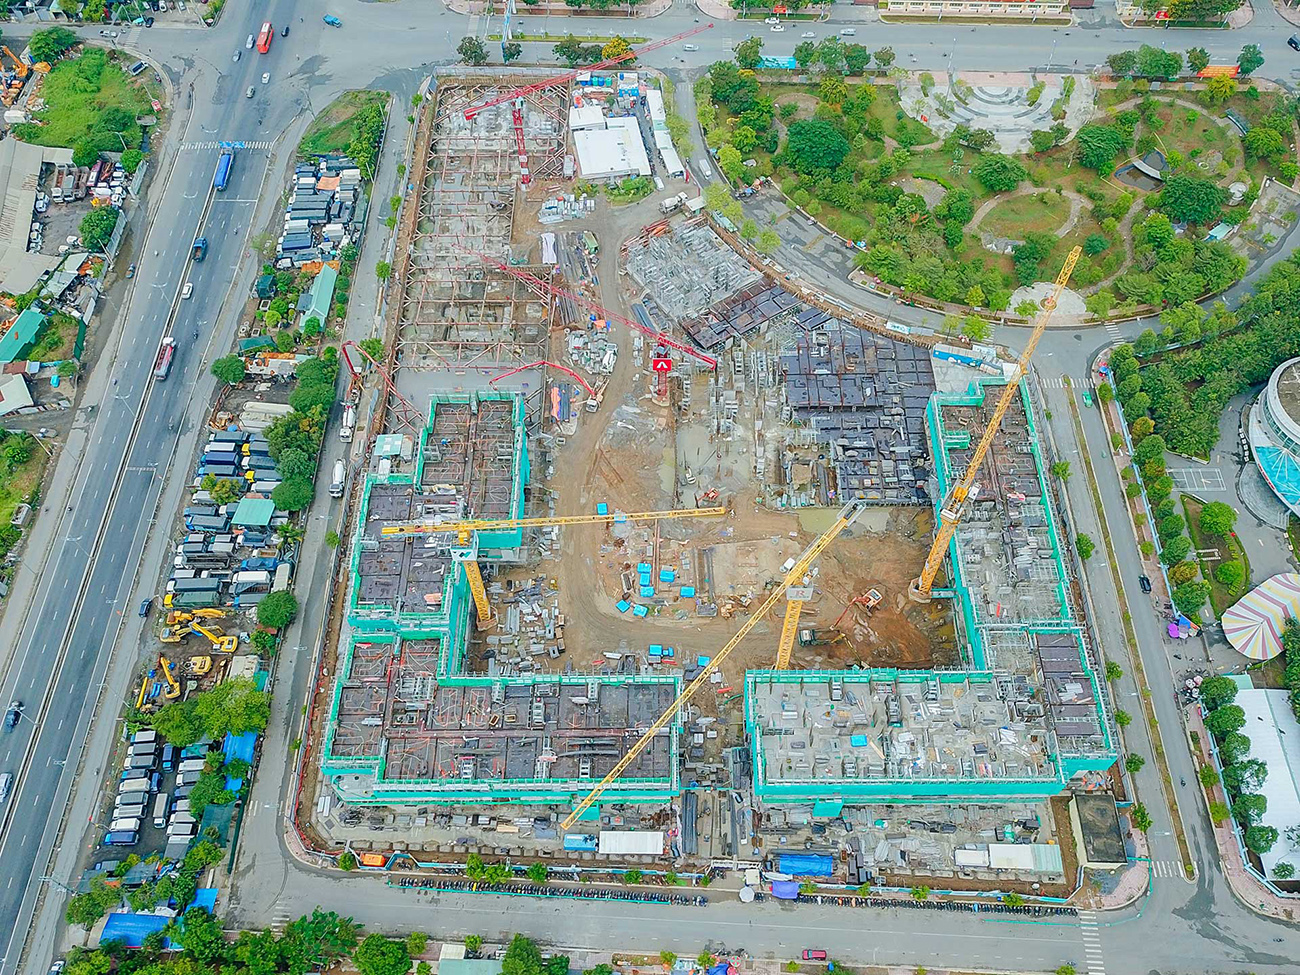 Tiến độ xây dựng dự án căn hộ West Gate Bình Chánh tháng 04/2022